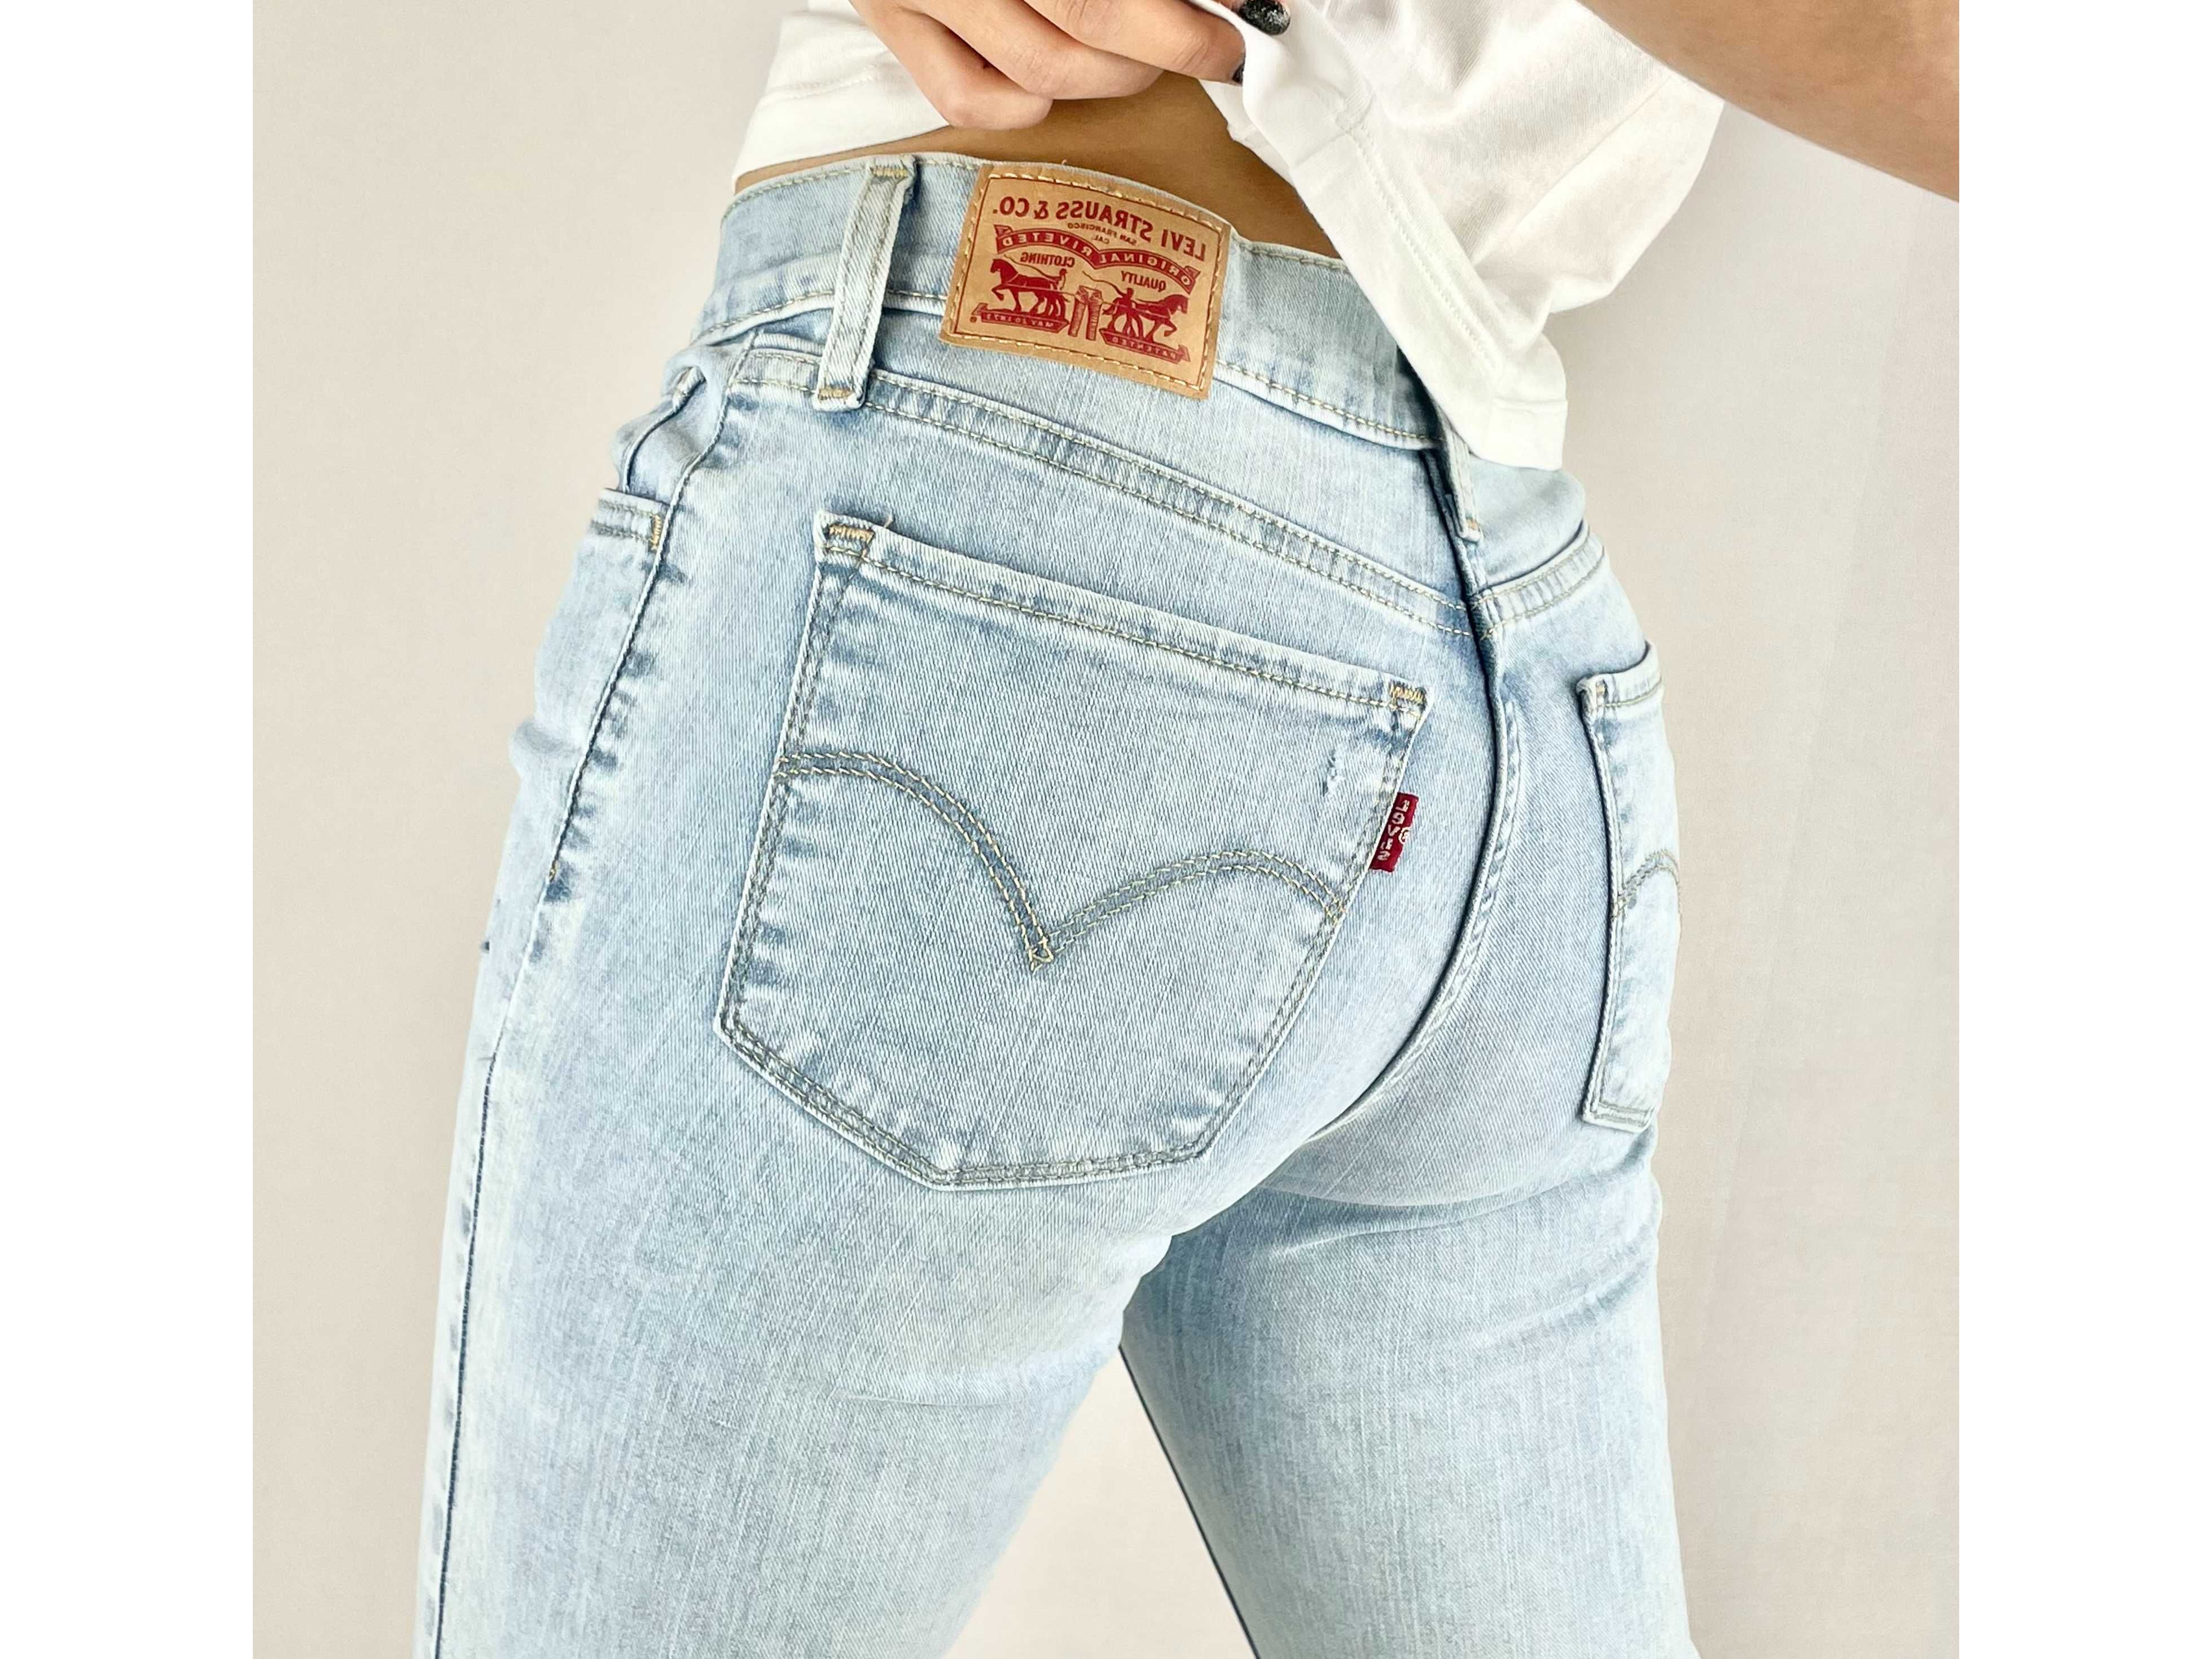 ХС Джинси Levi’s super skinny джинсы скини скіні оригинал